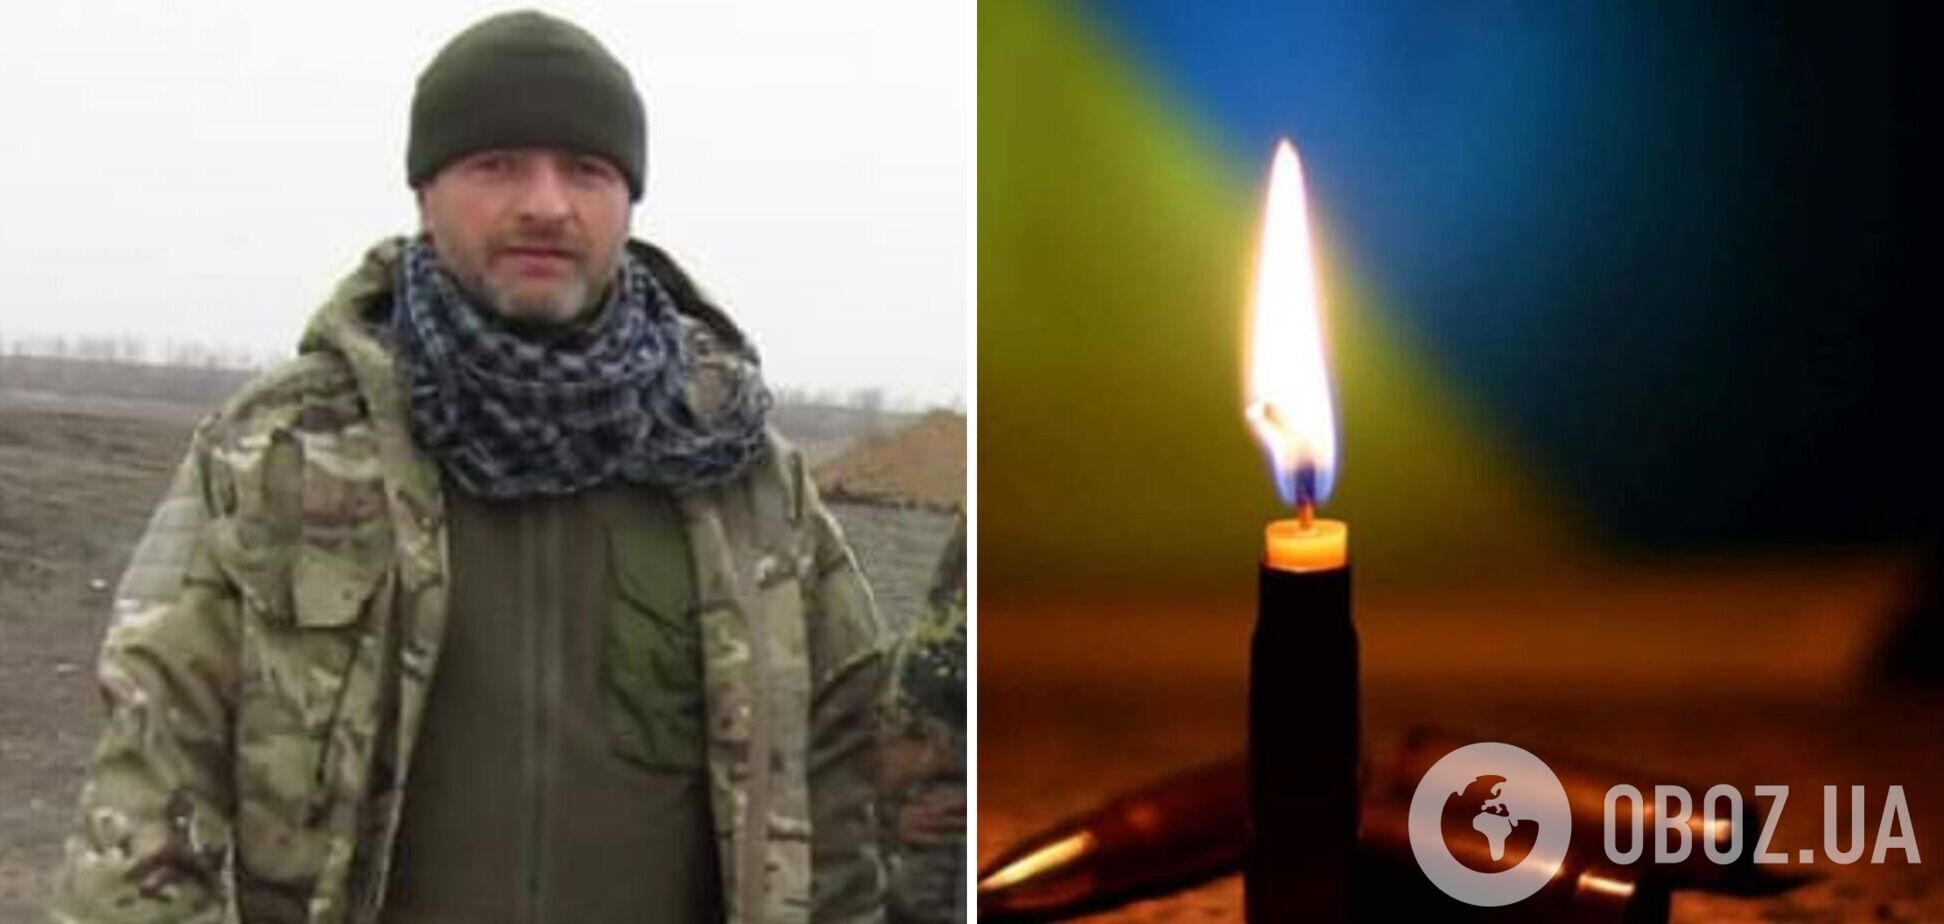 Командир, який викликав захват: у боях за Україну віддав життя захисник із Тернополя 'Махно'. Фото